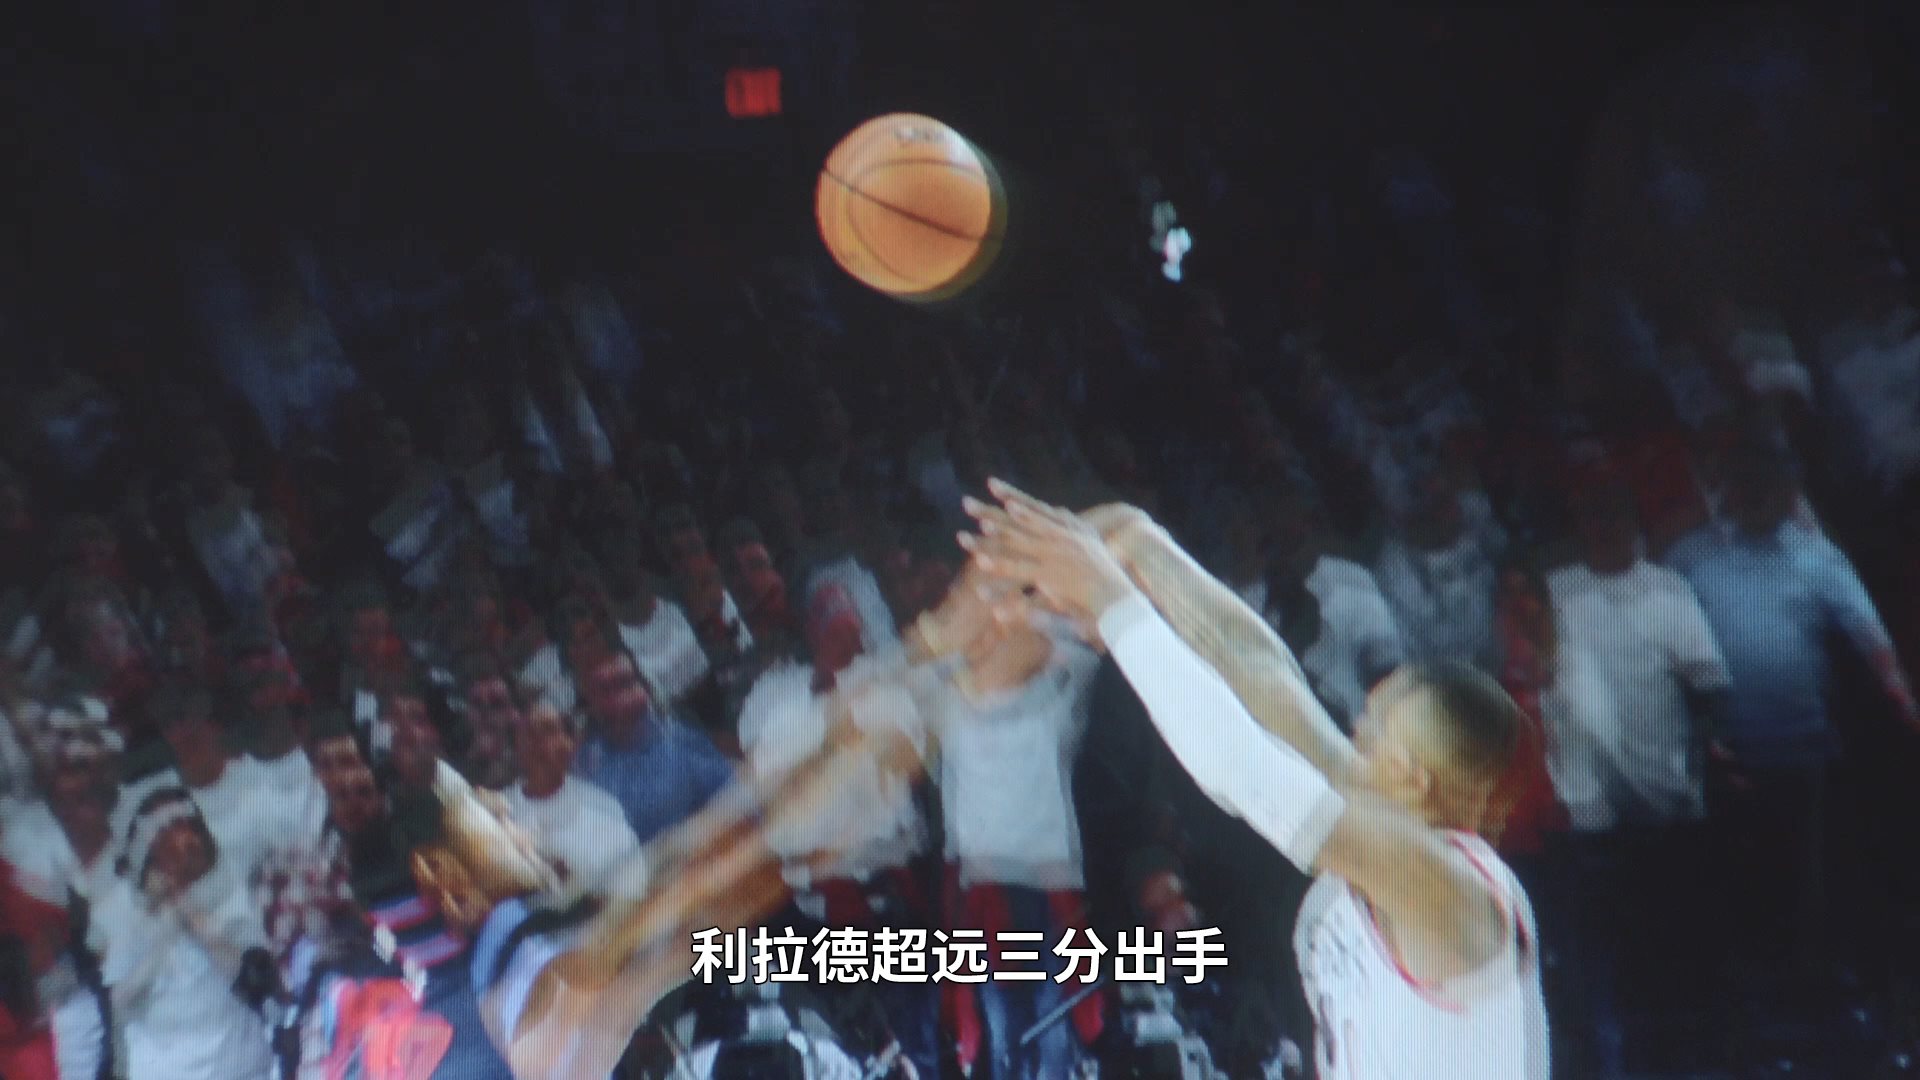 《NBA 2K21》上市宣傳片發布 球星利拉德真人出鏡